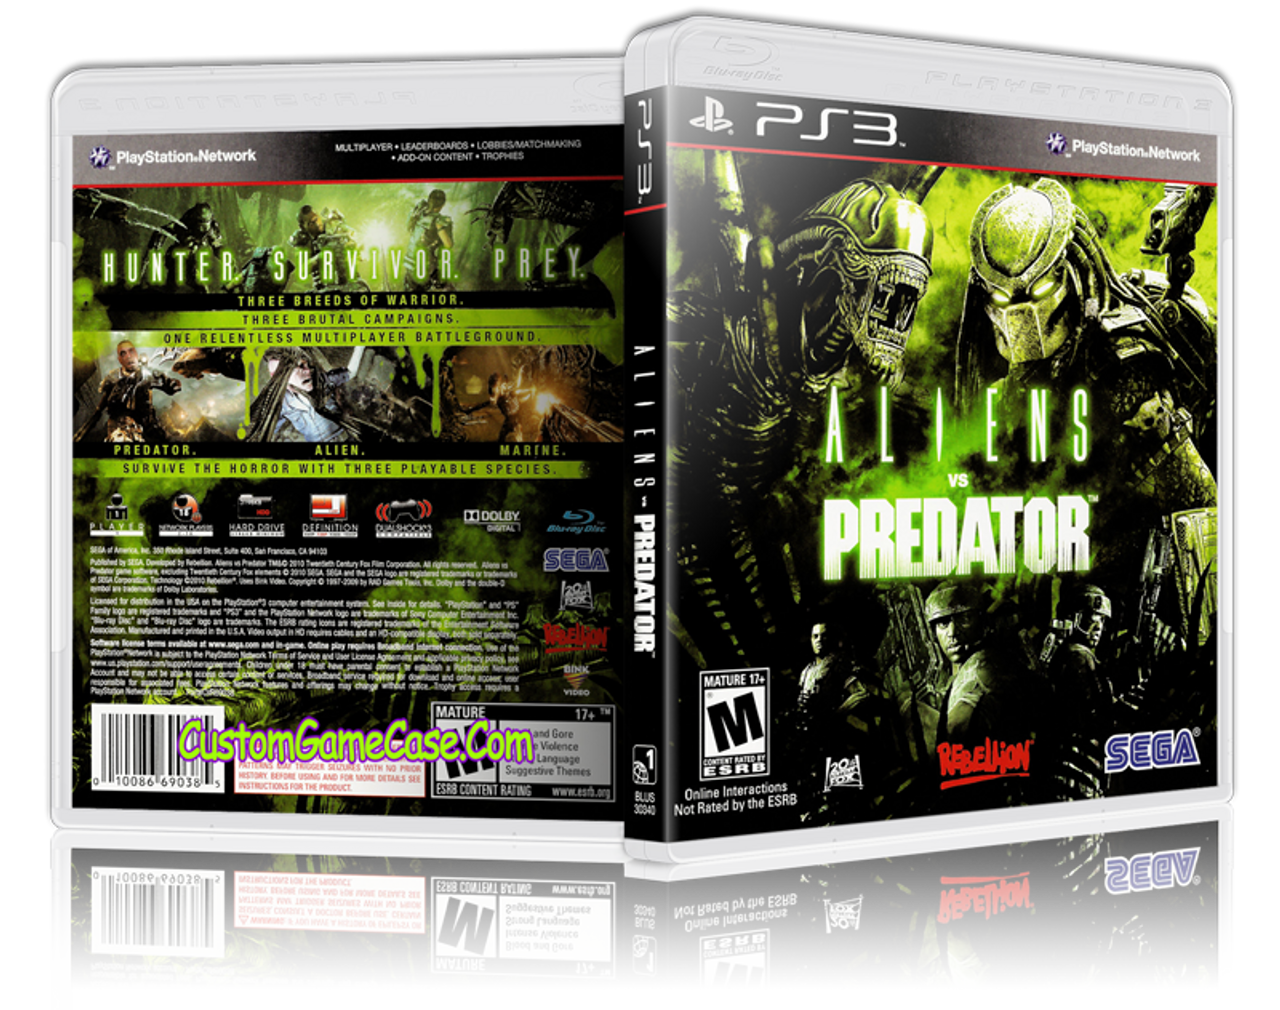 New PS3 Aliens vs. Predator demo